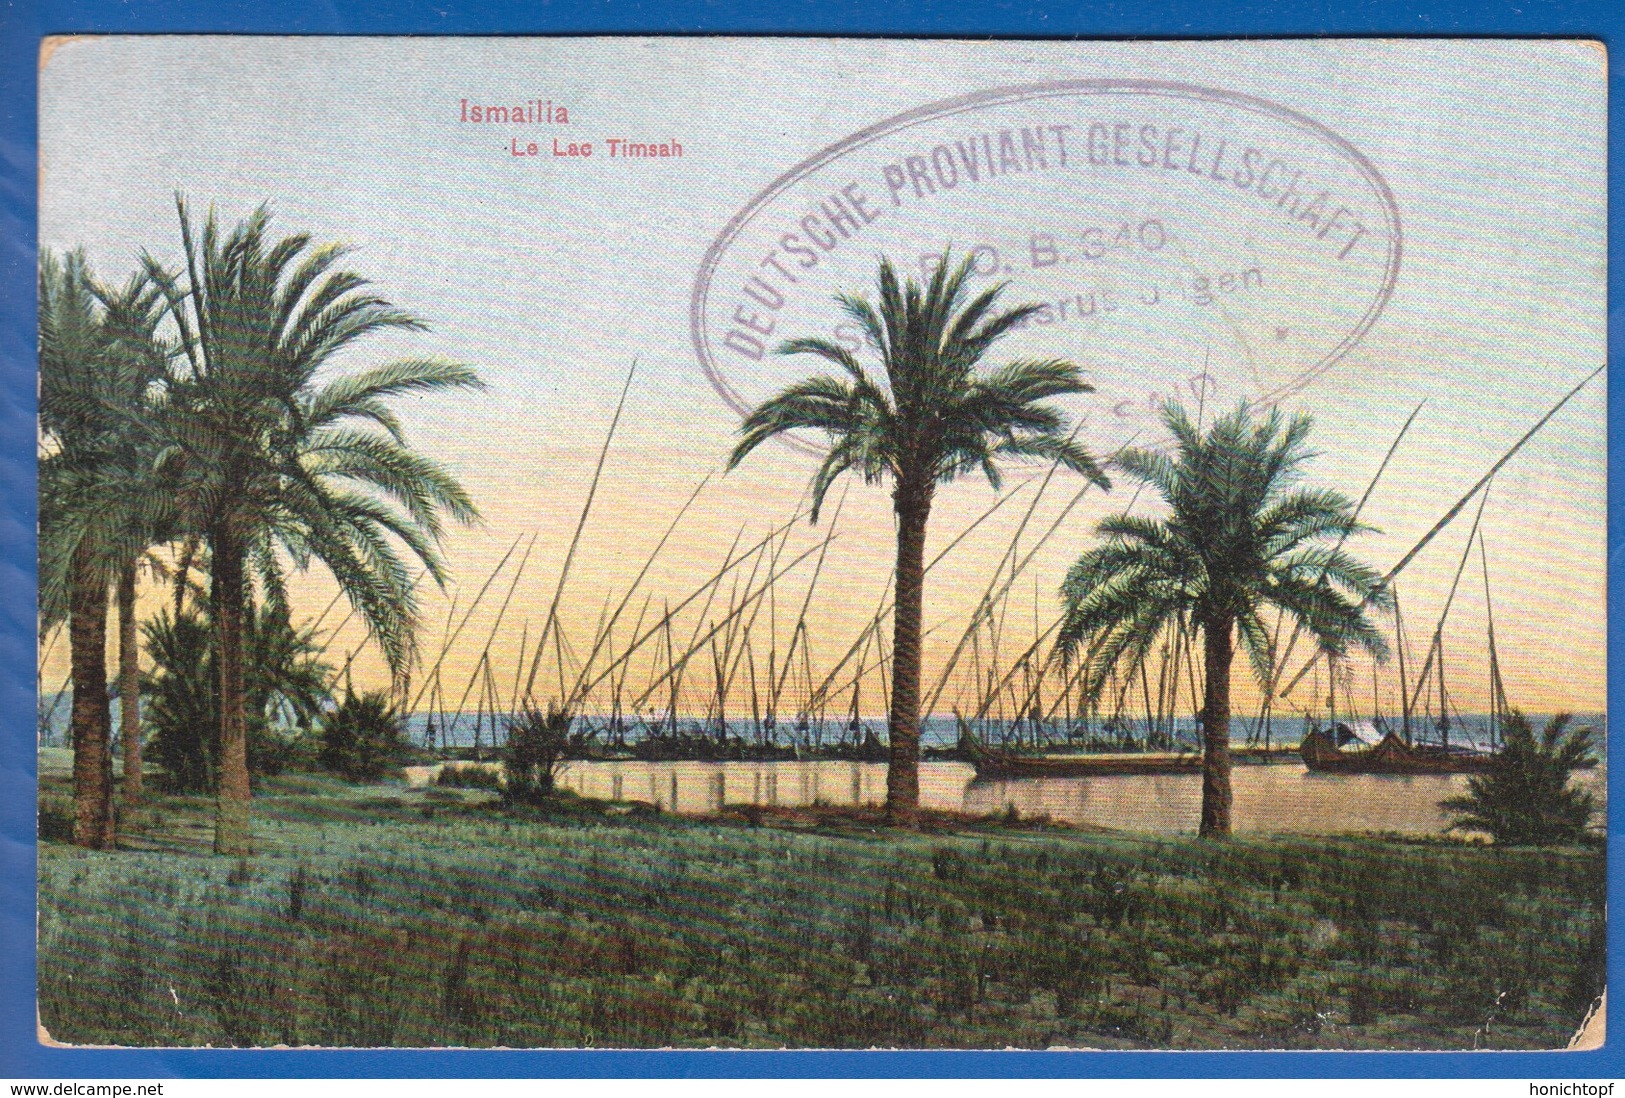 Egypt; Ismailia; Le Lac Timsah; Stempel "Deutsche Proviant Gesellschaft Port Said" - Ismailia